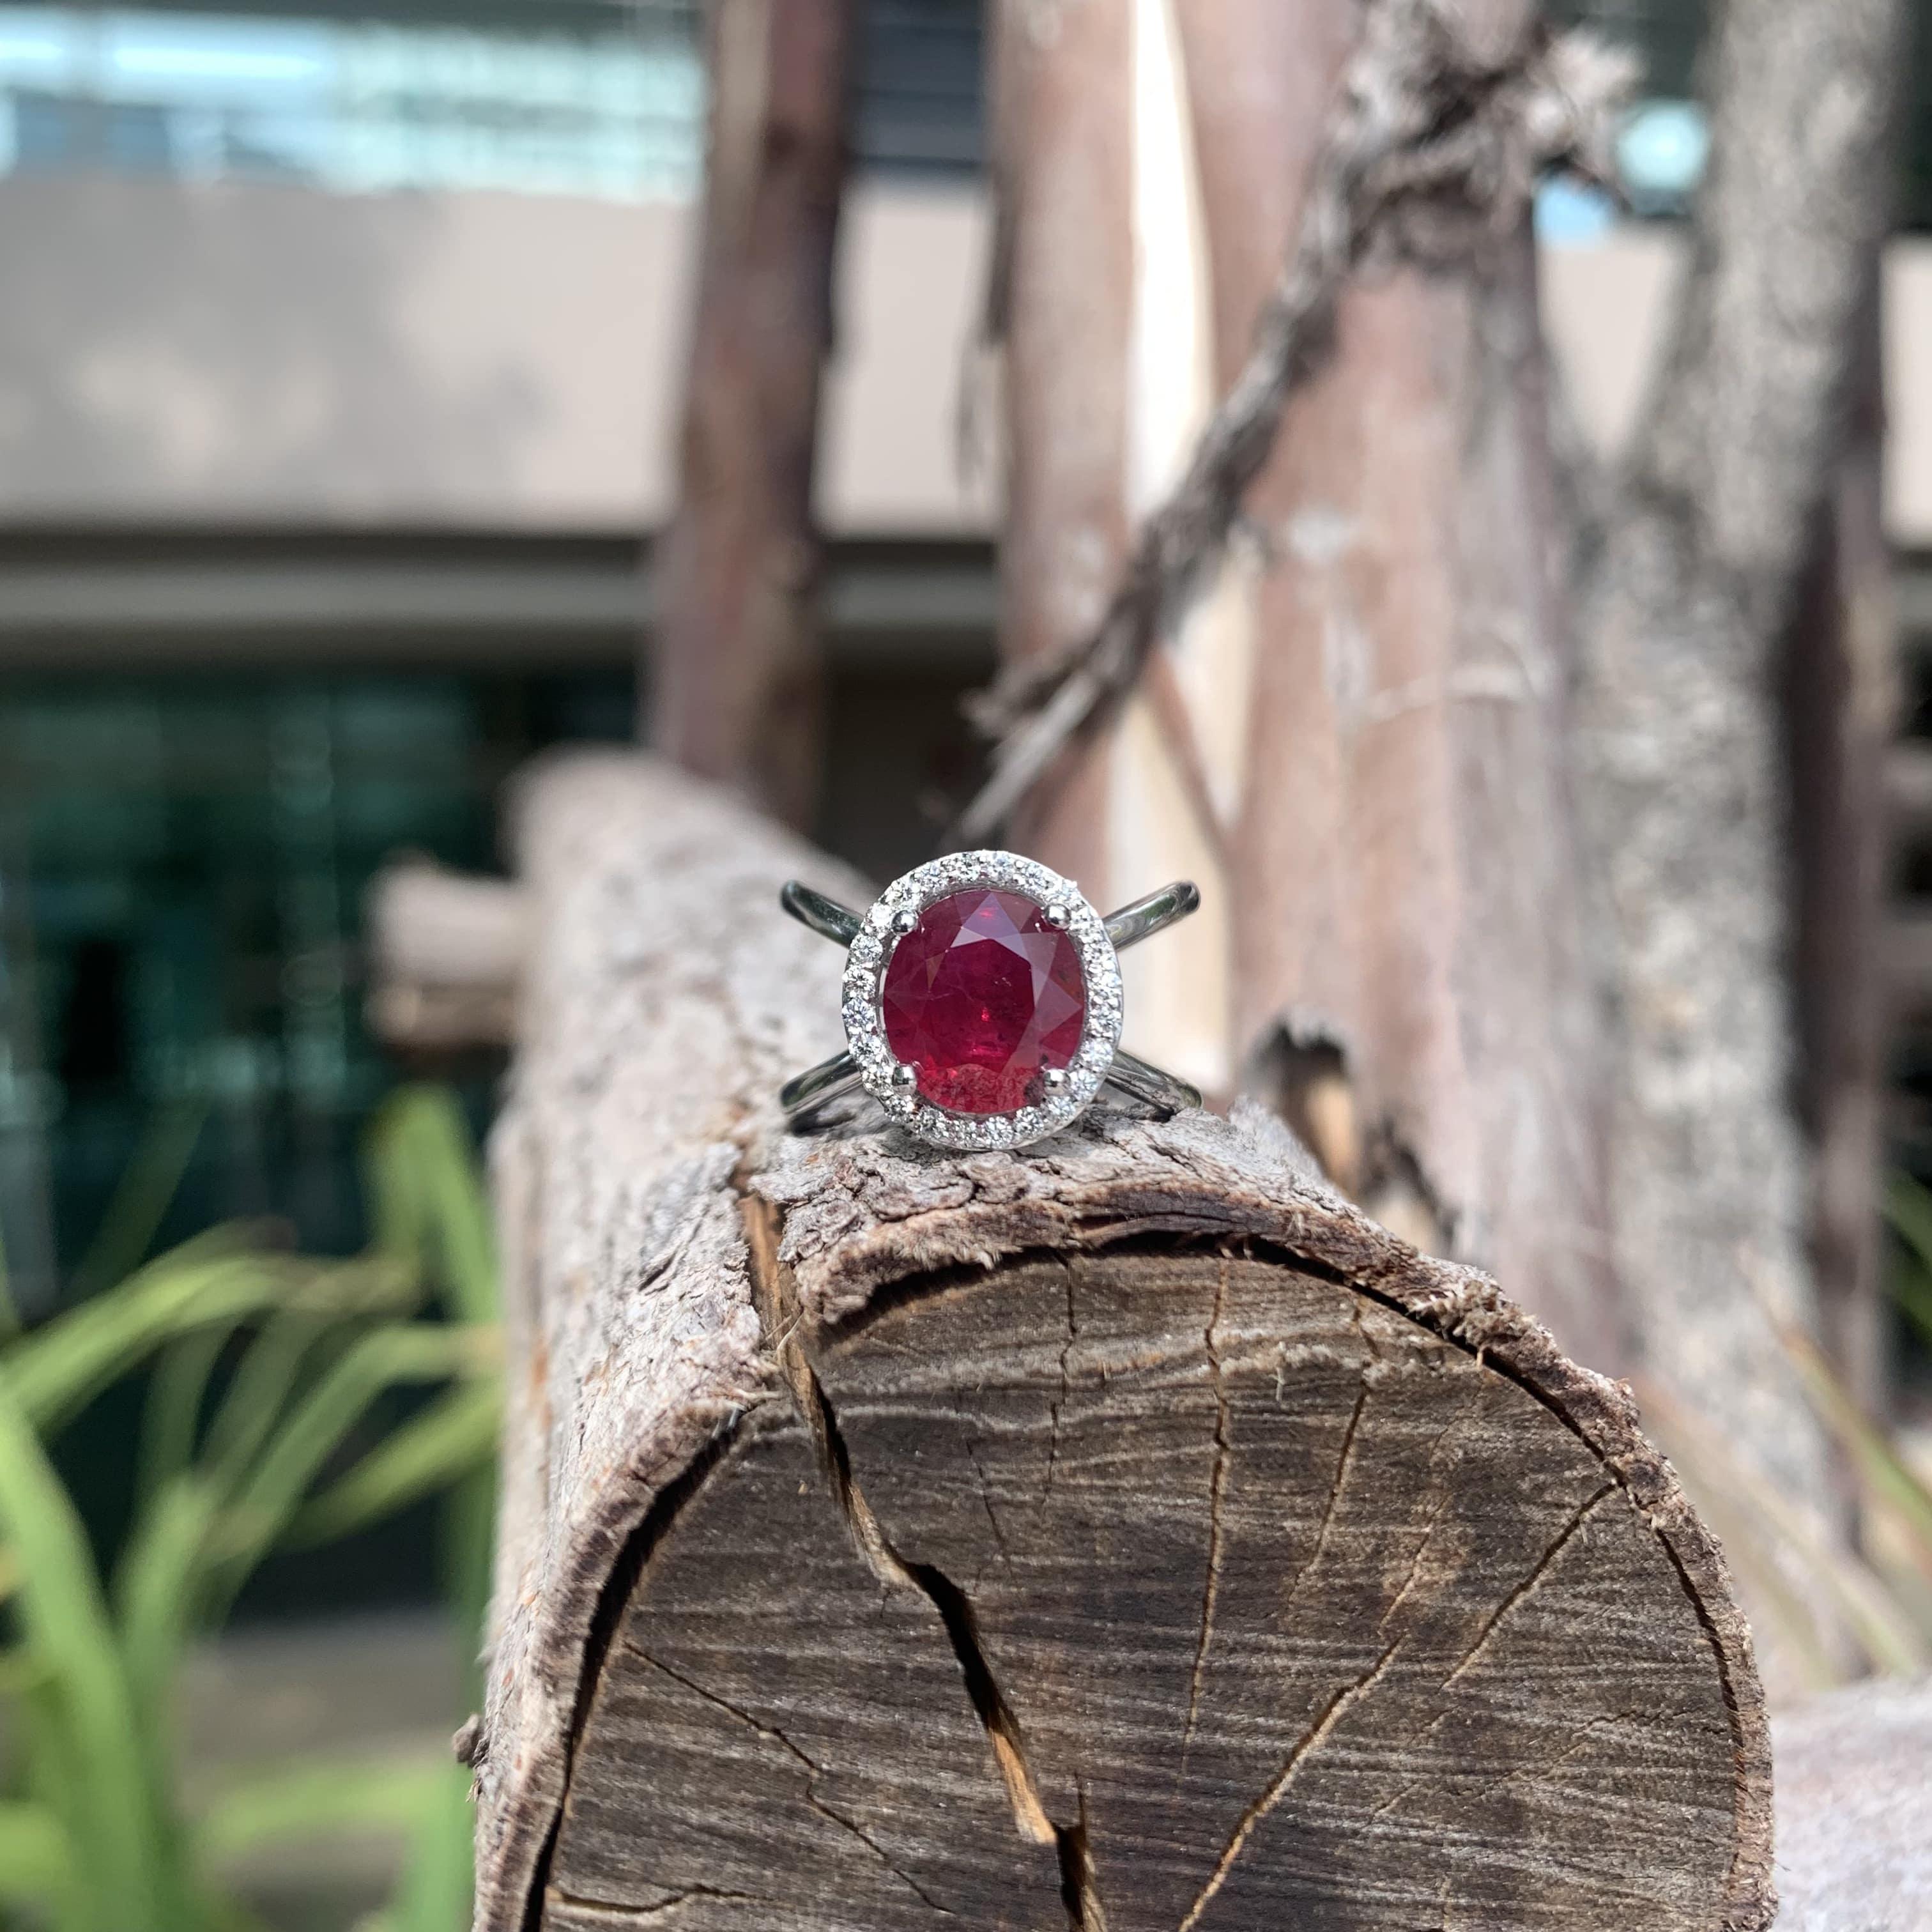 Au cœur de cette bague exquise se trouve un envoûtant rubis de 3,23 carats, rayonnant d'une teinte rouge riche et profonde qui symbolise la passion et l'élégance. Originaire du Mozambique, le rubis arbore une teinte sang de pigeon resplendissante,